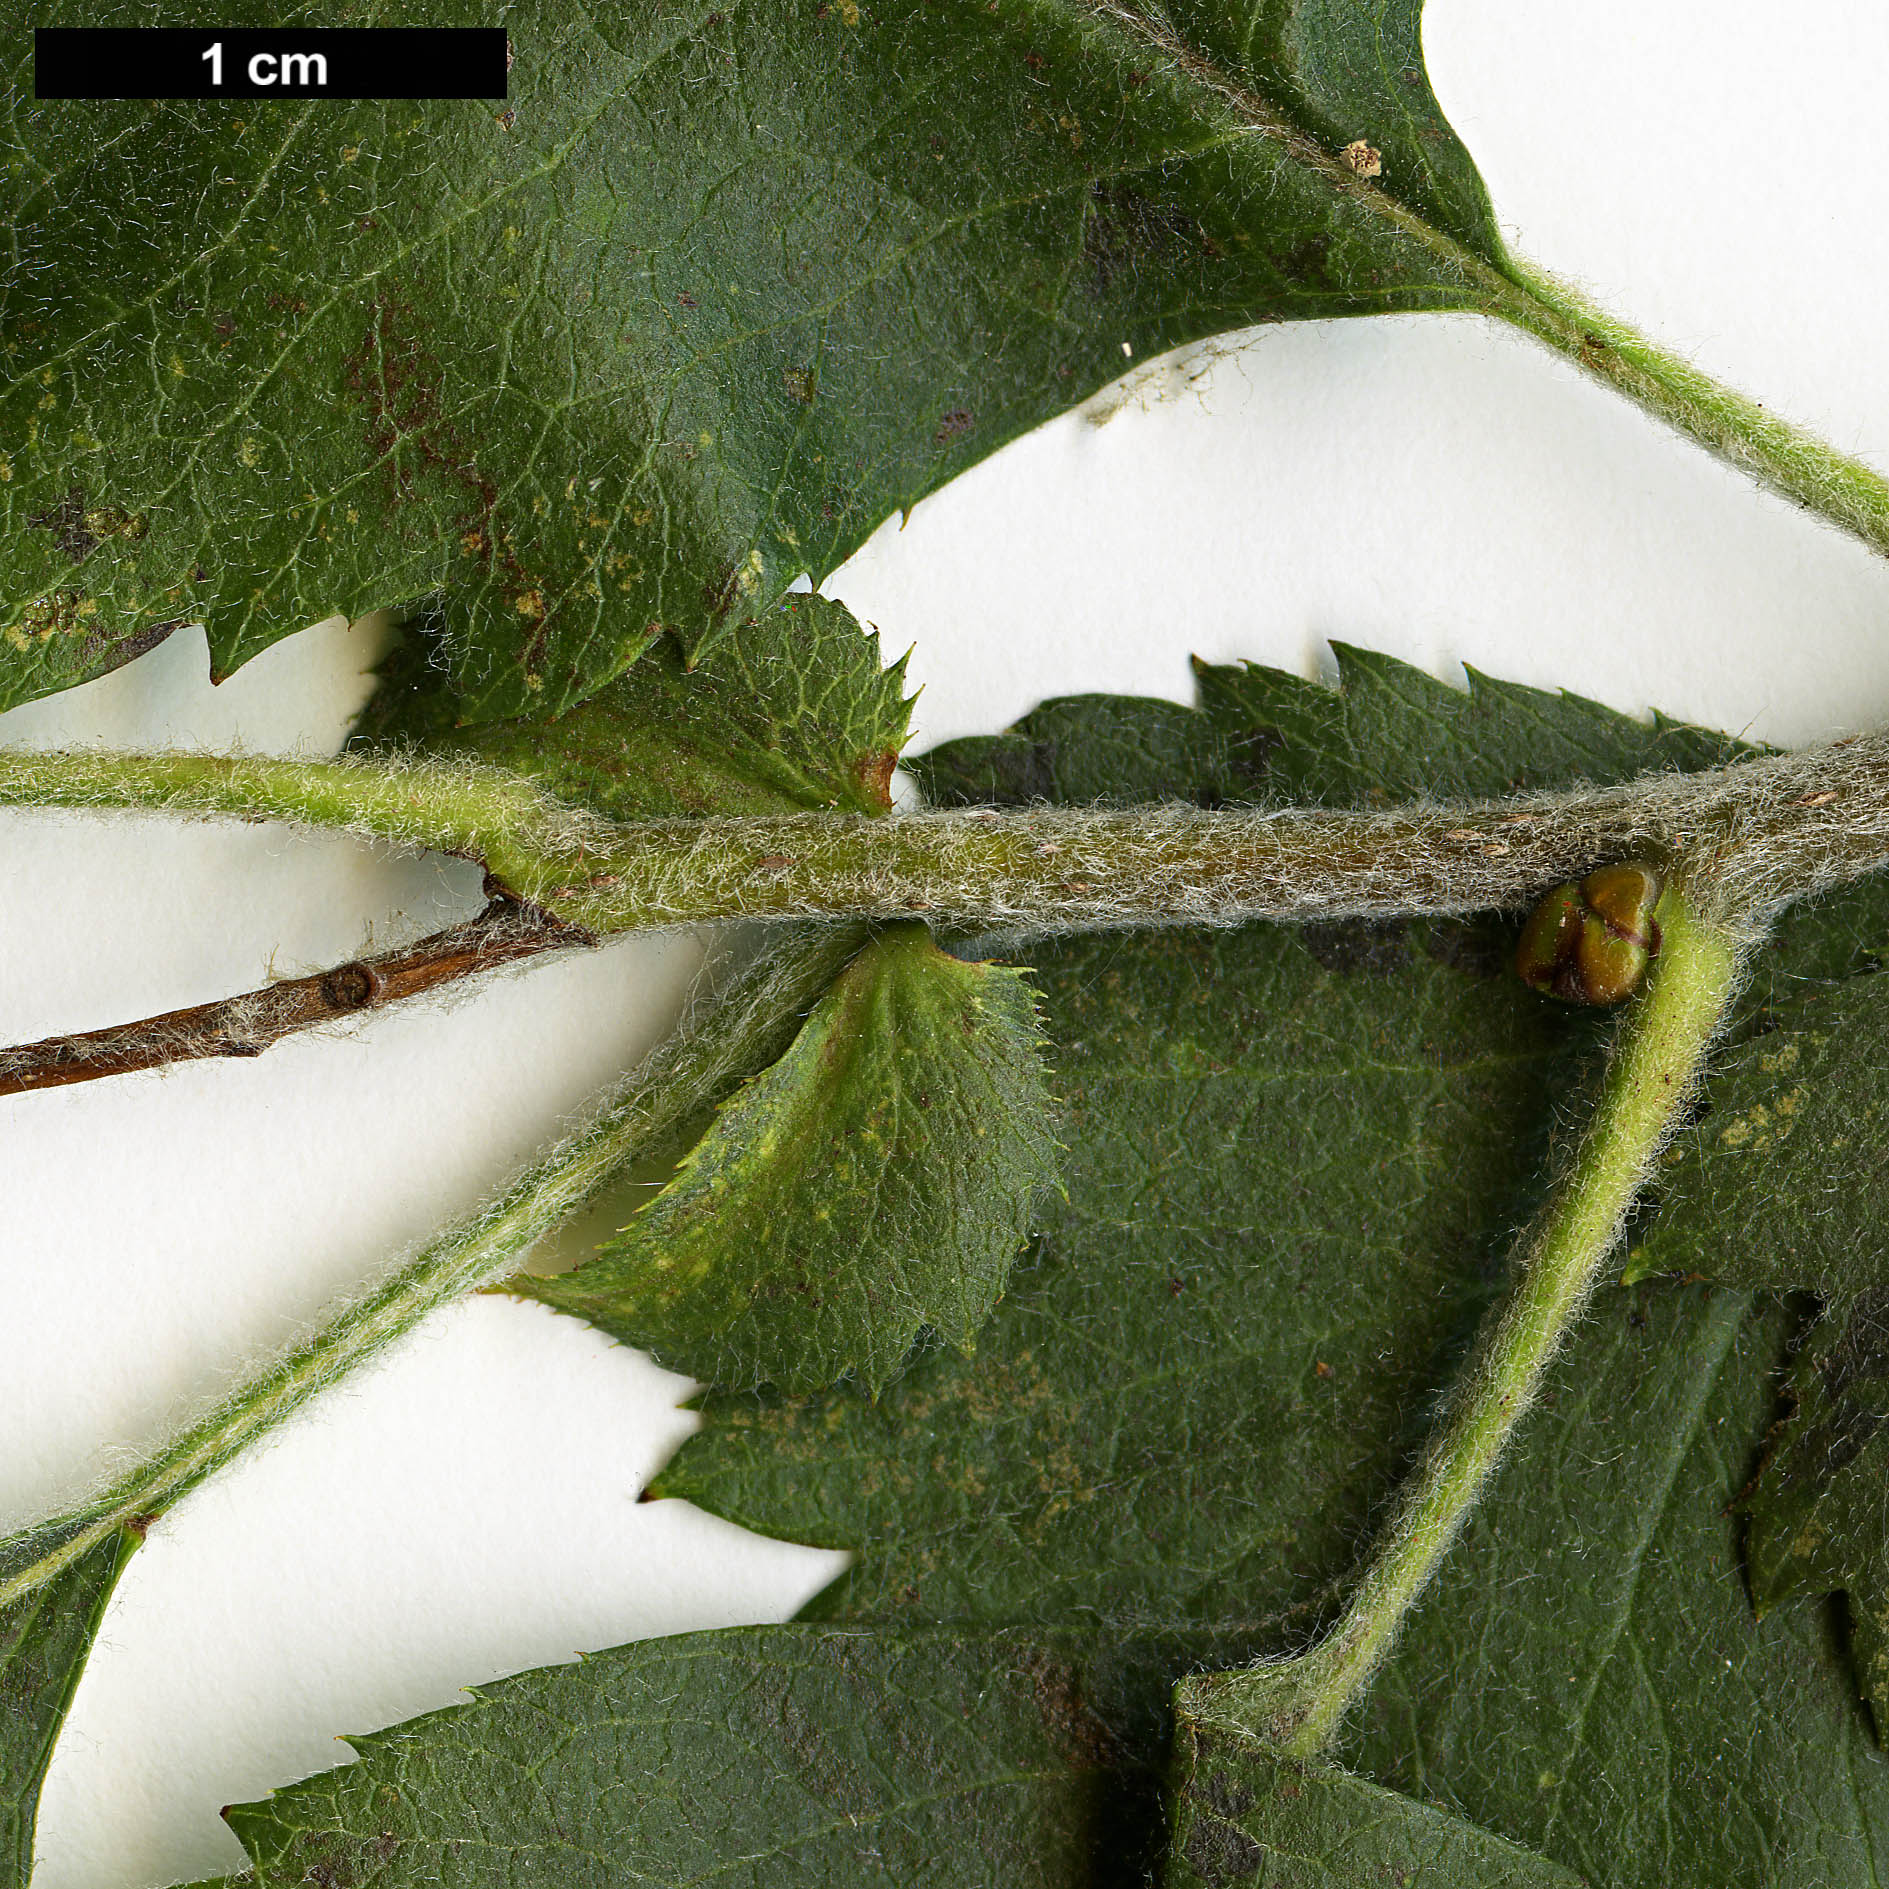 High resolution image: Family: Rosaceae - Genus: Crataegus - Taxon: nigra